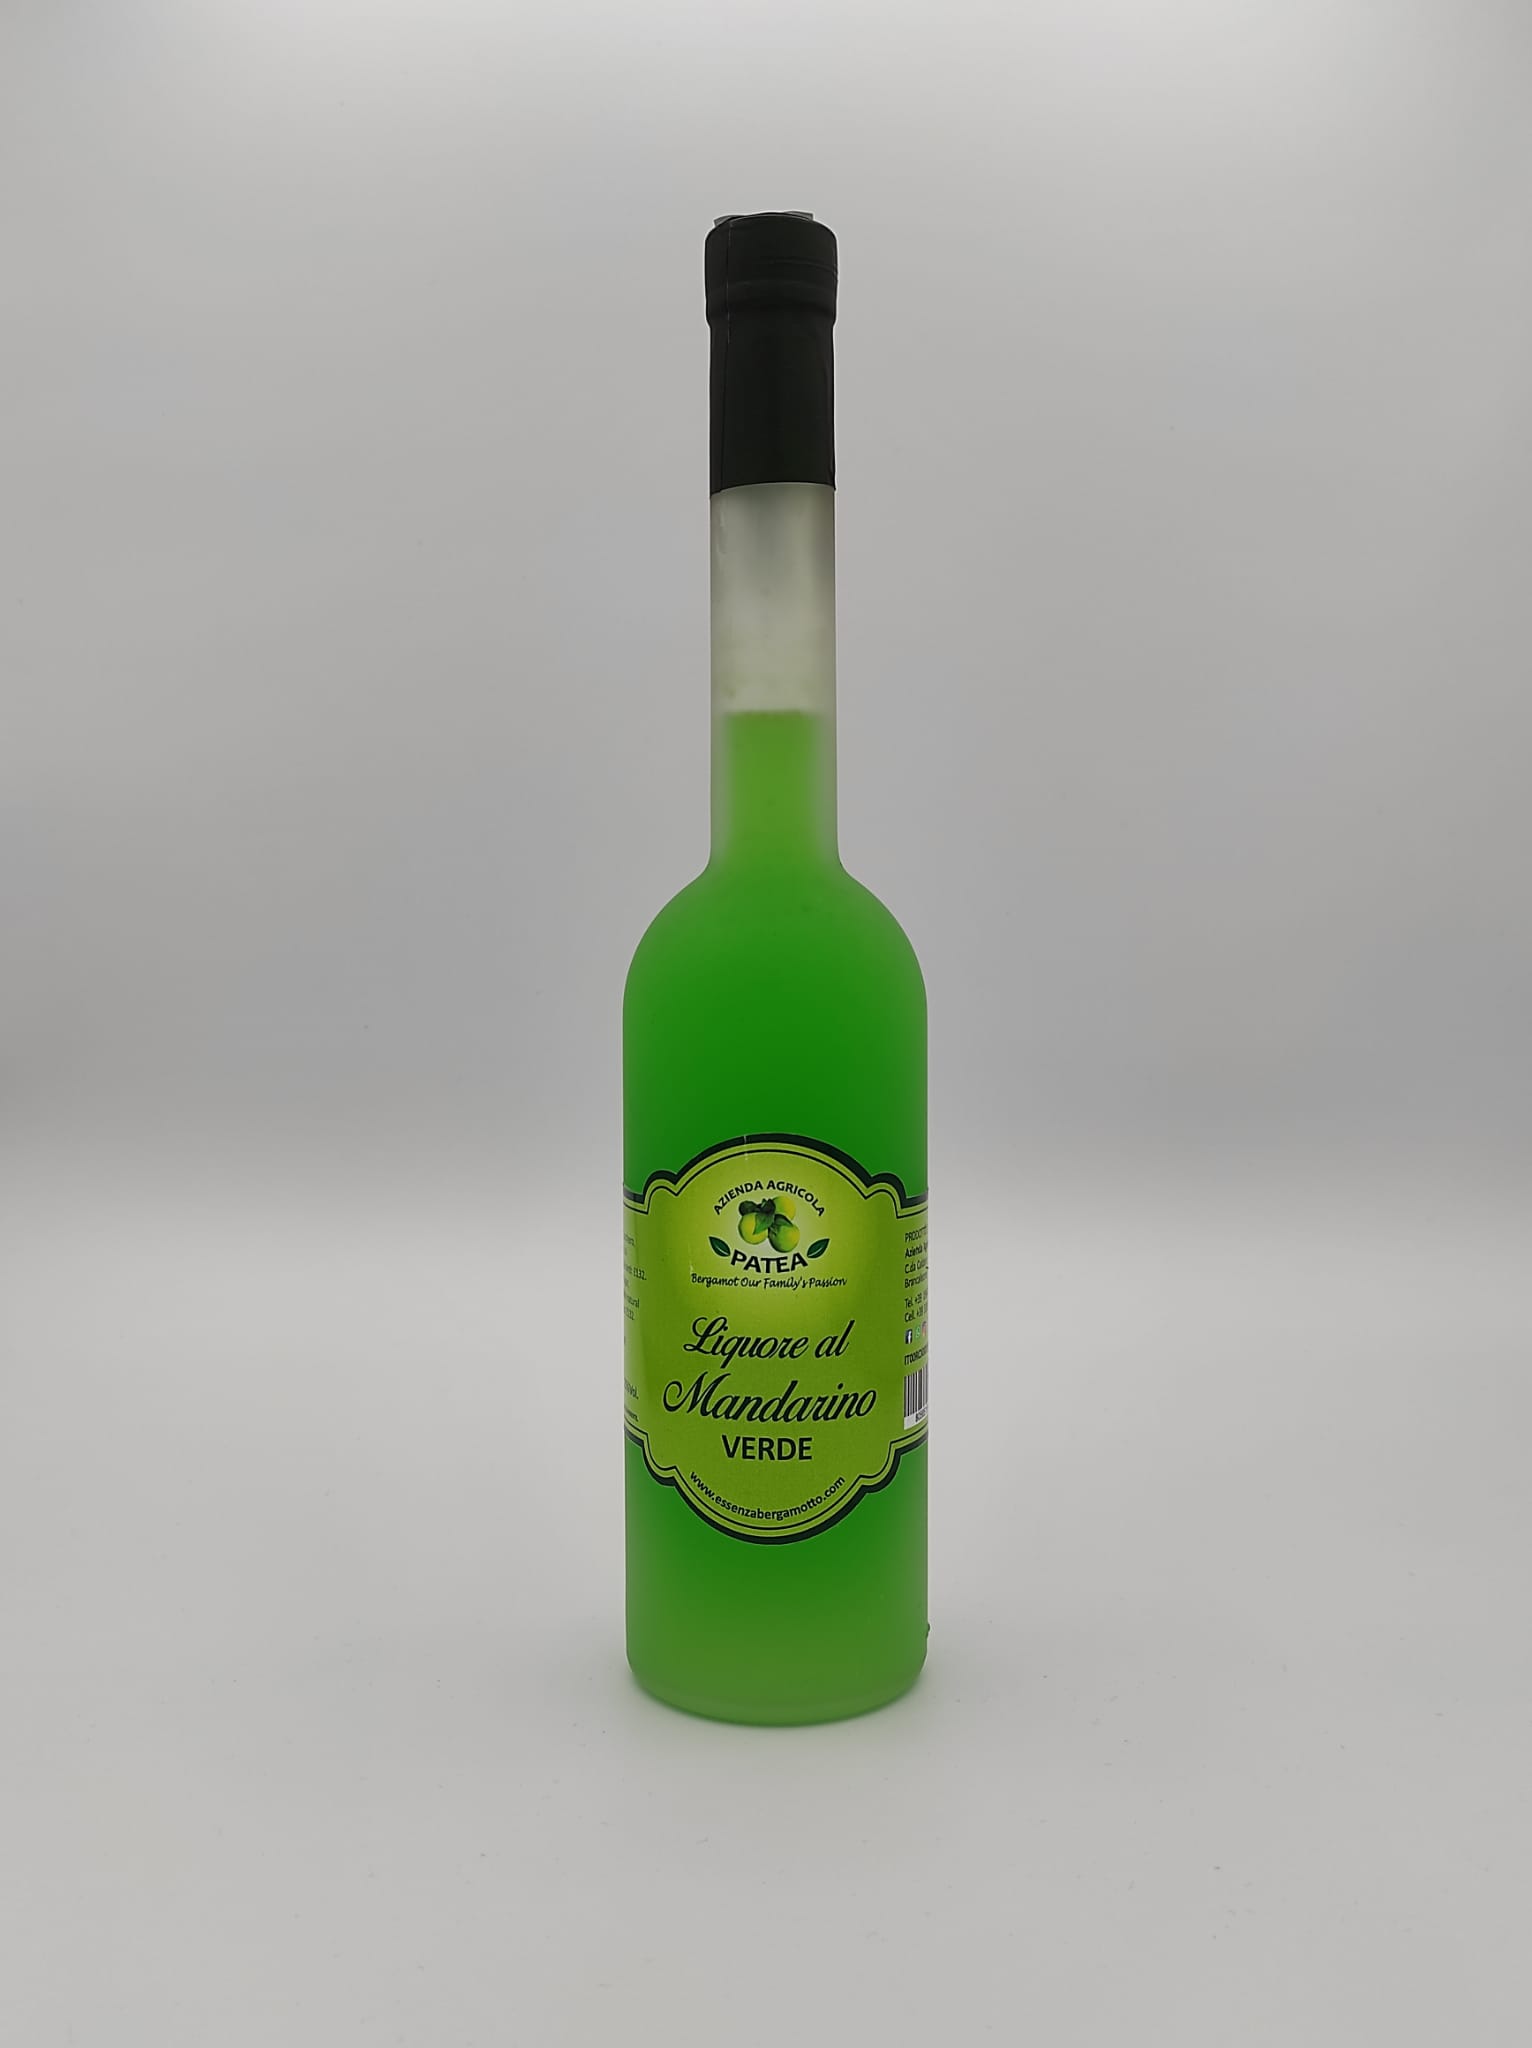 liquore mandarino verde